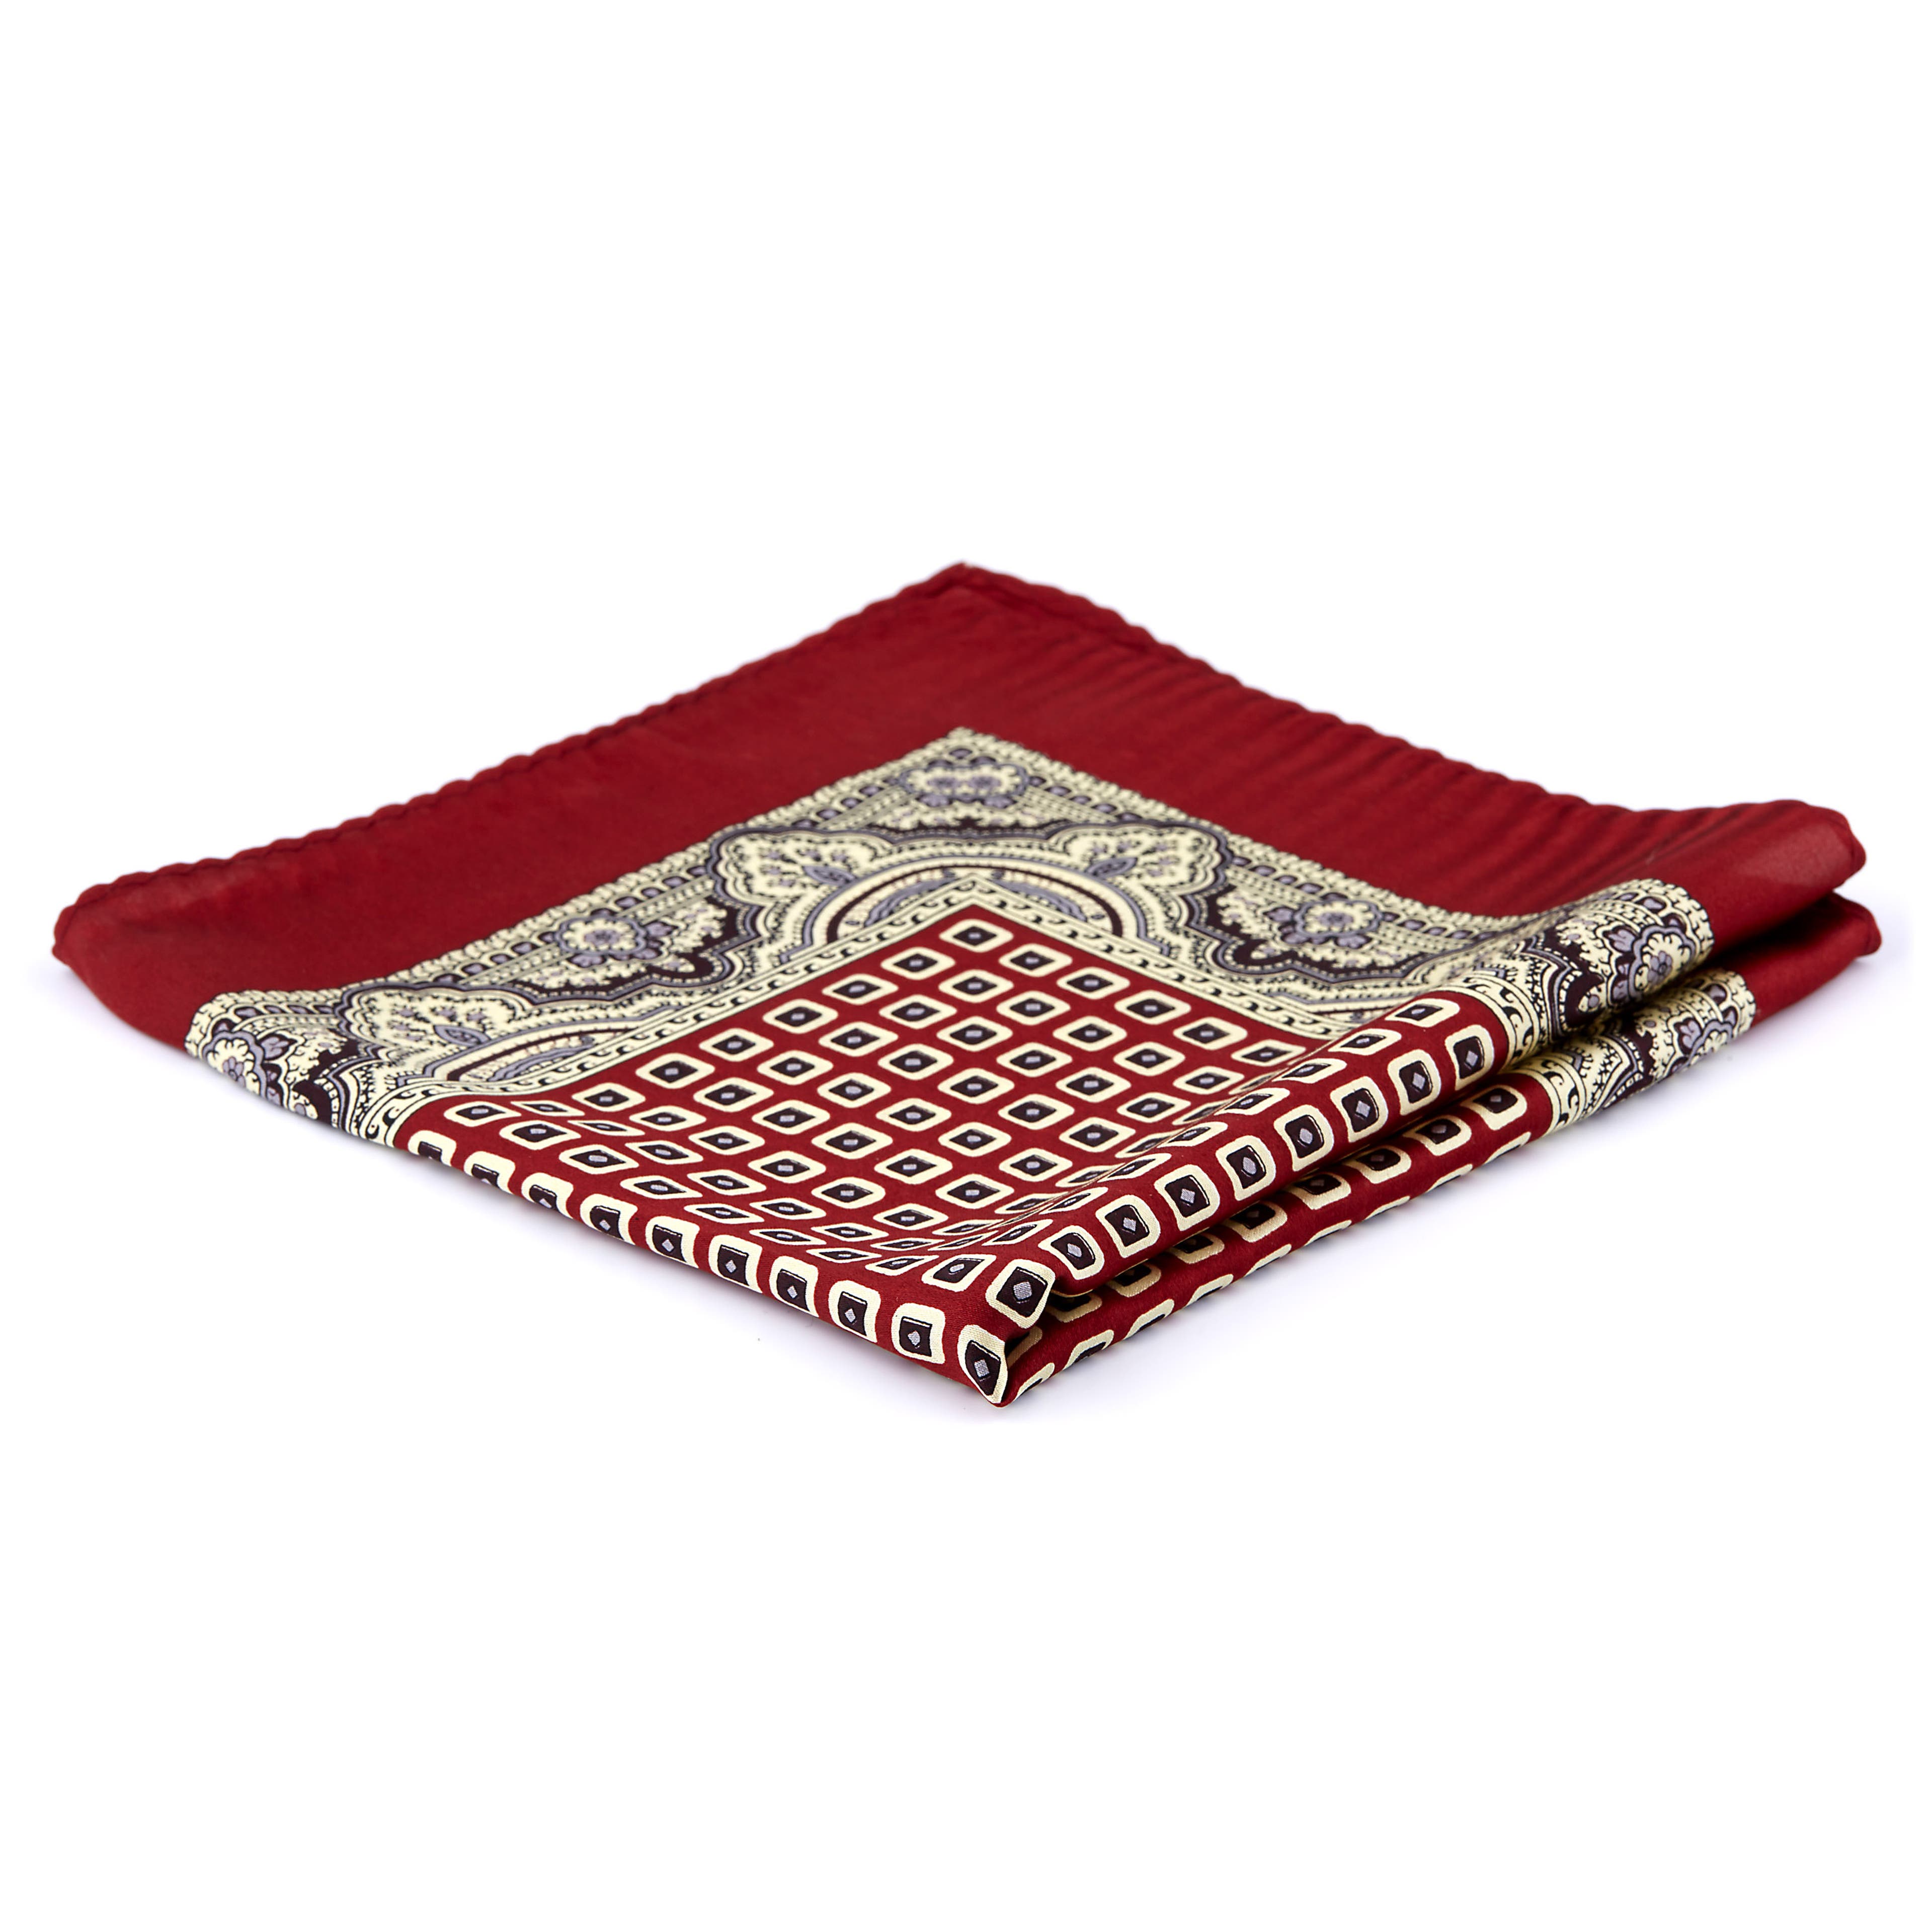 Vintage Red Silk Pocket Square